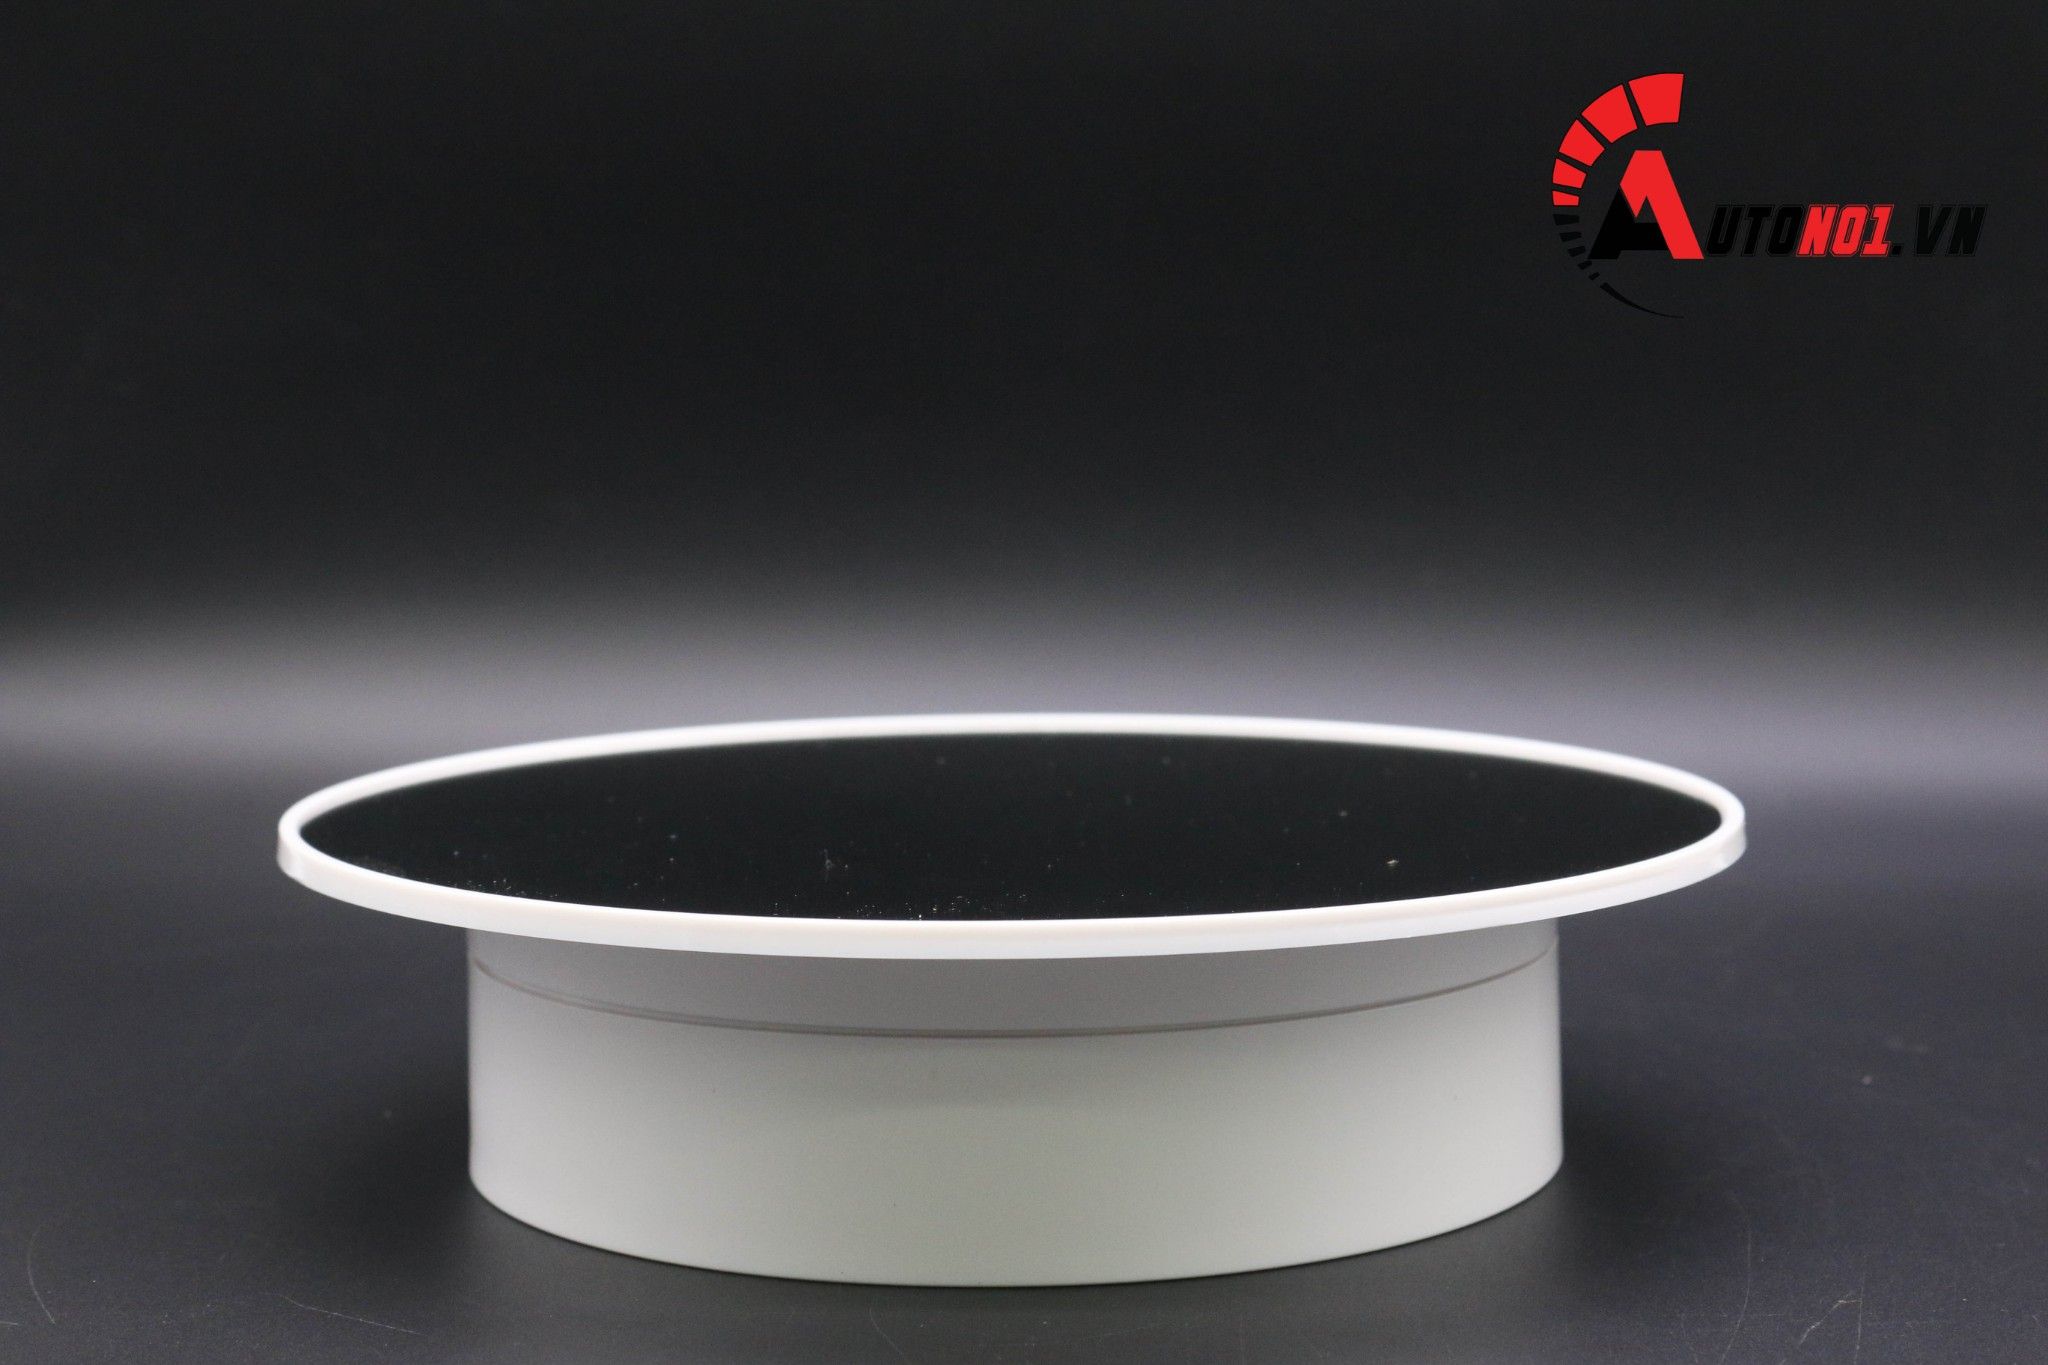  Phụ kiện đế xoay sản phẩm 360 độ màu trắng mặt gương dùng pin và điện đường kính 20cm 5366 